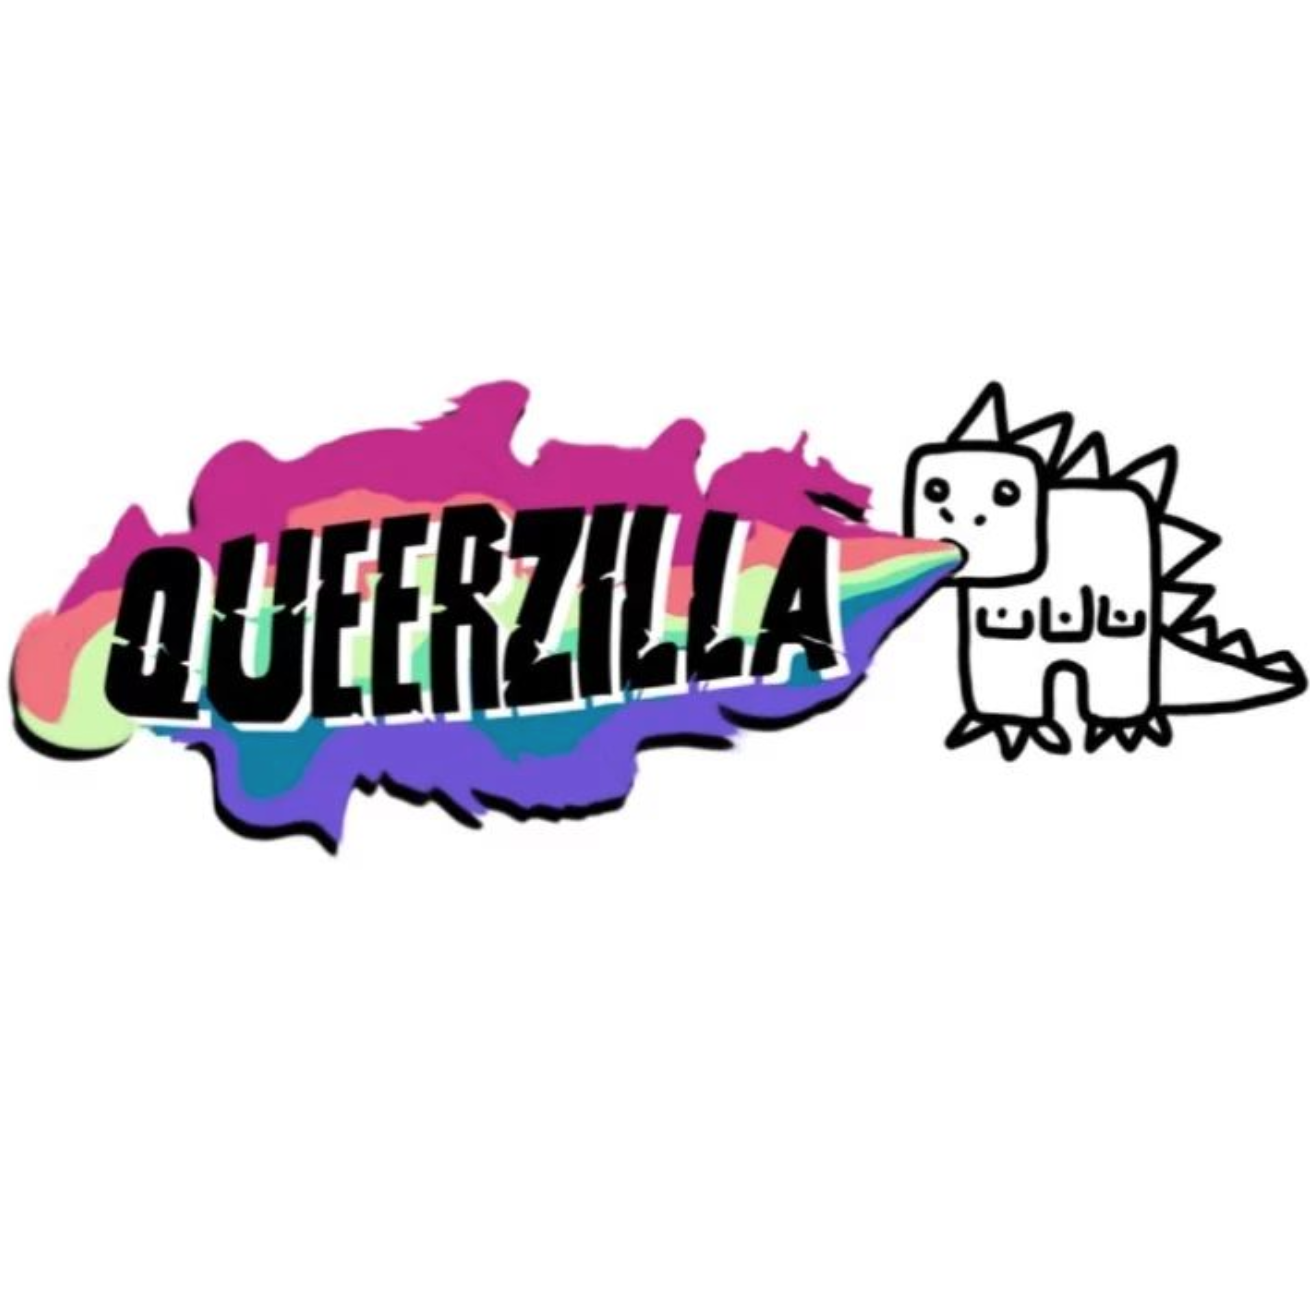 Queerzilla Festival